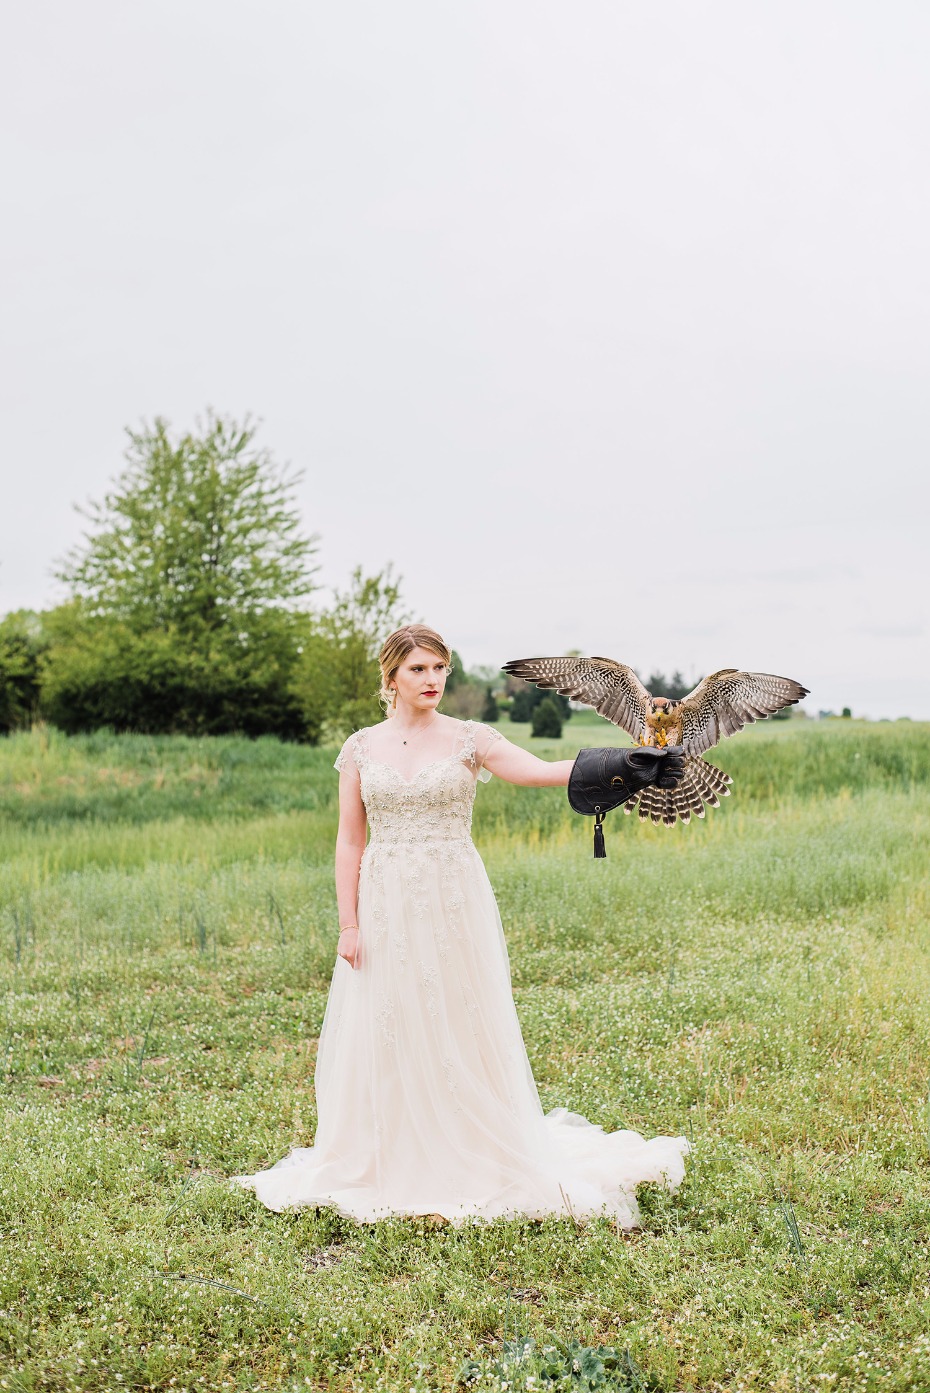 Falcon and the bride